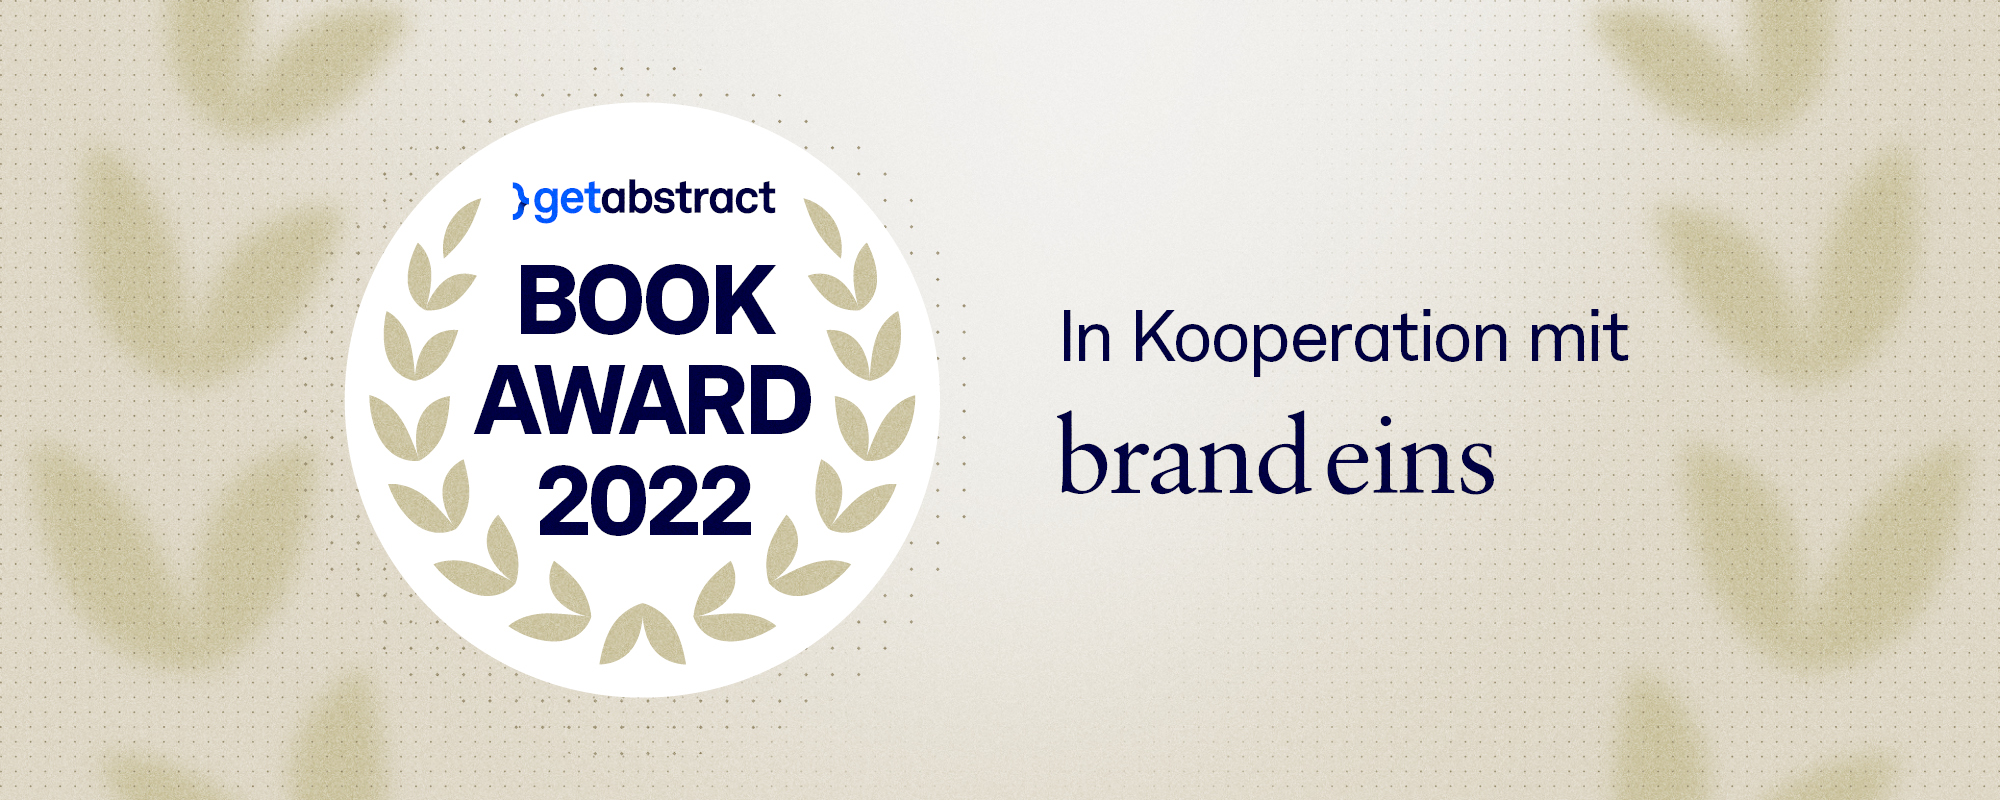 getAbstract International Book Award 2022 mit neuer Kategorie und Feier zum 20-jährigen Jubiläum